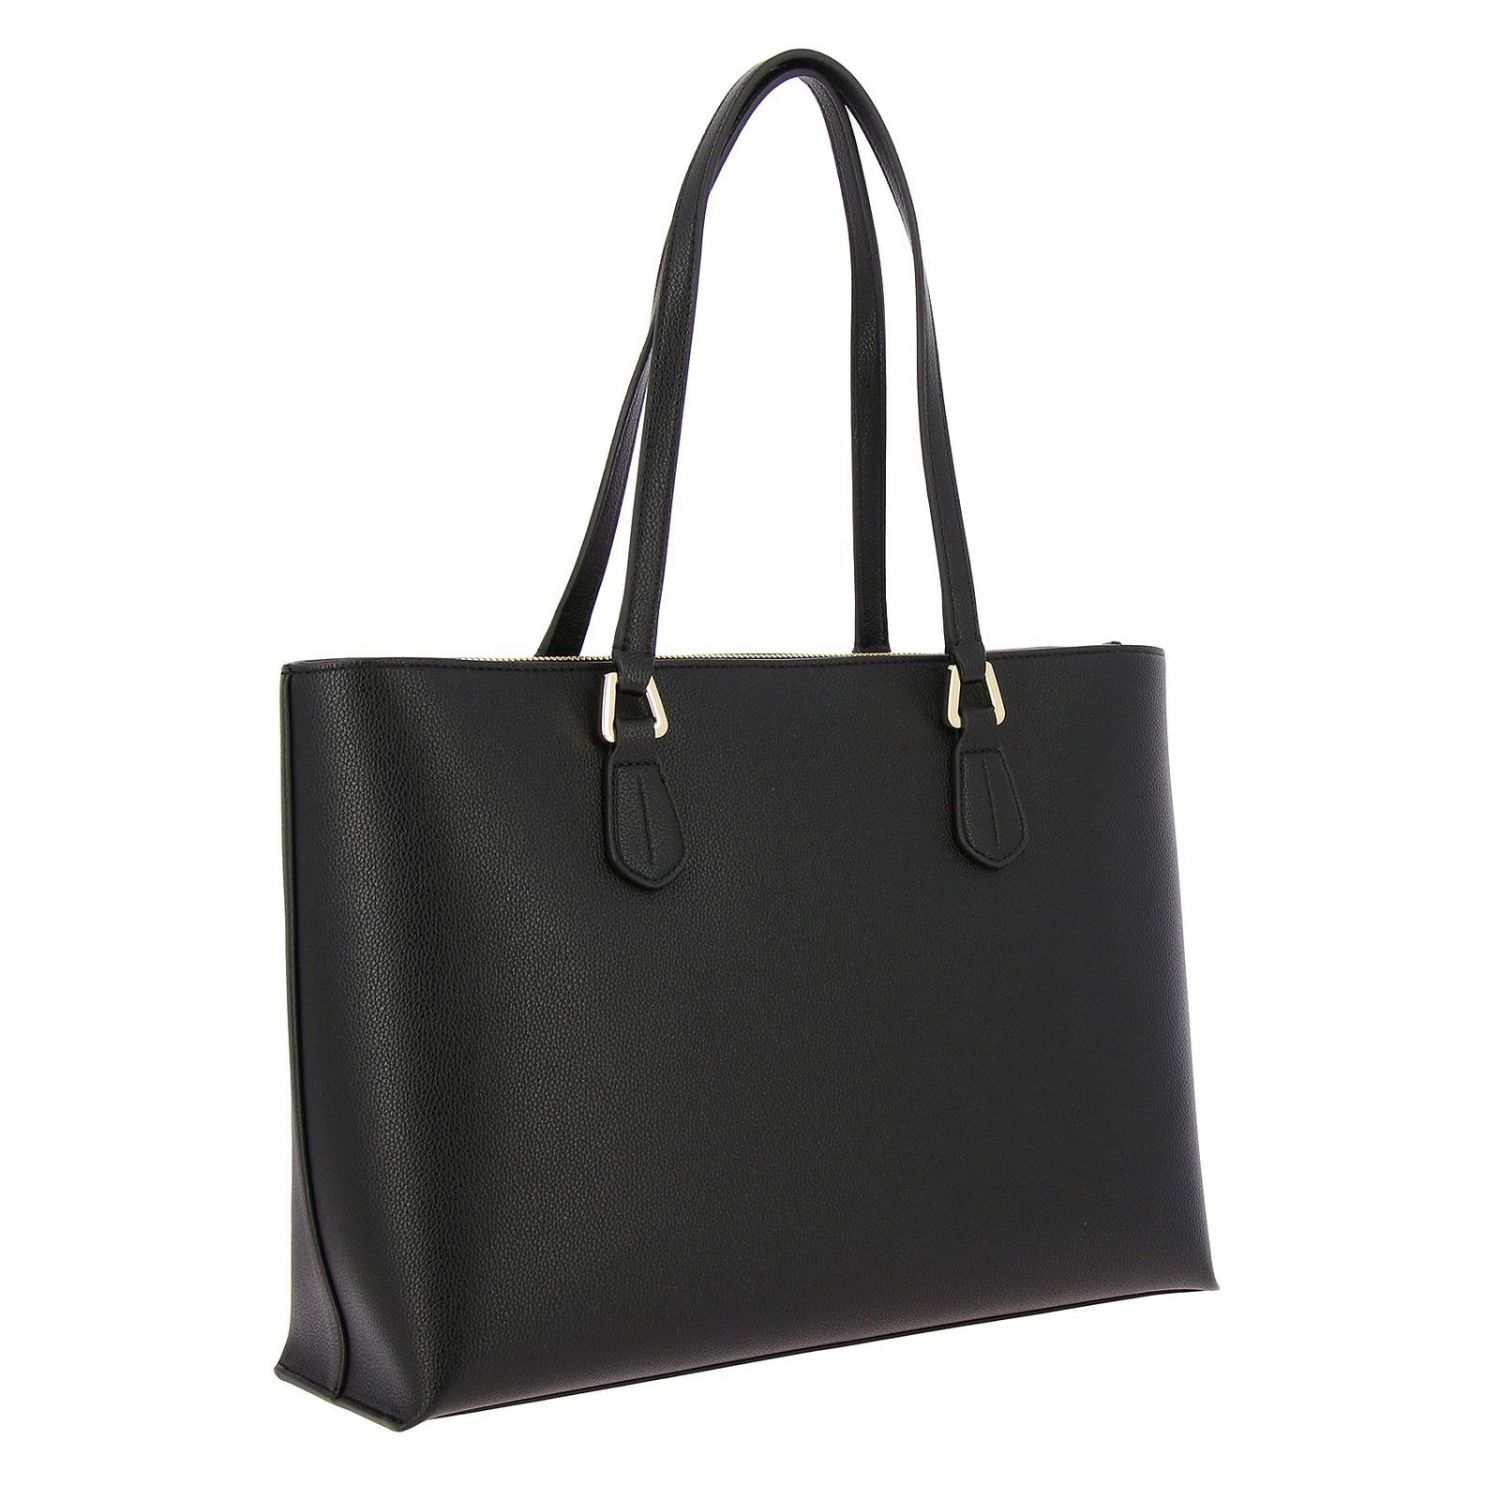 Emporio Armani Outlet: Shoulder bag women - Black | Shoulder Bag ...